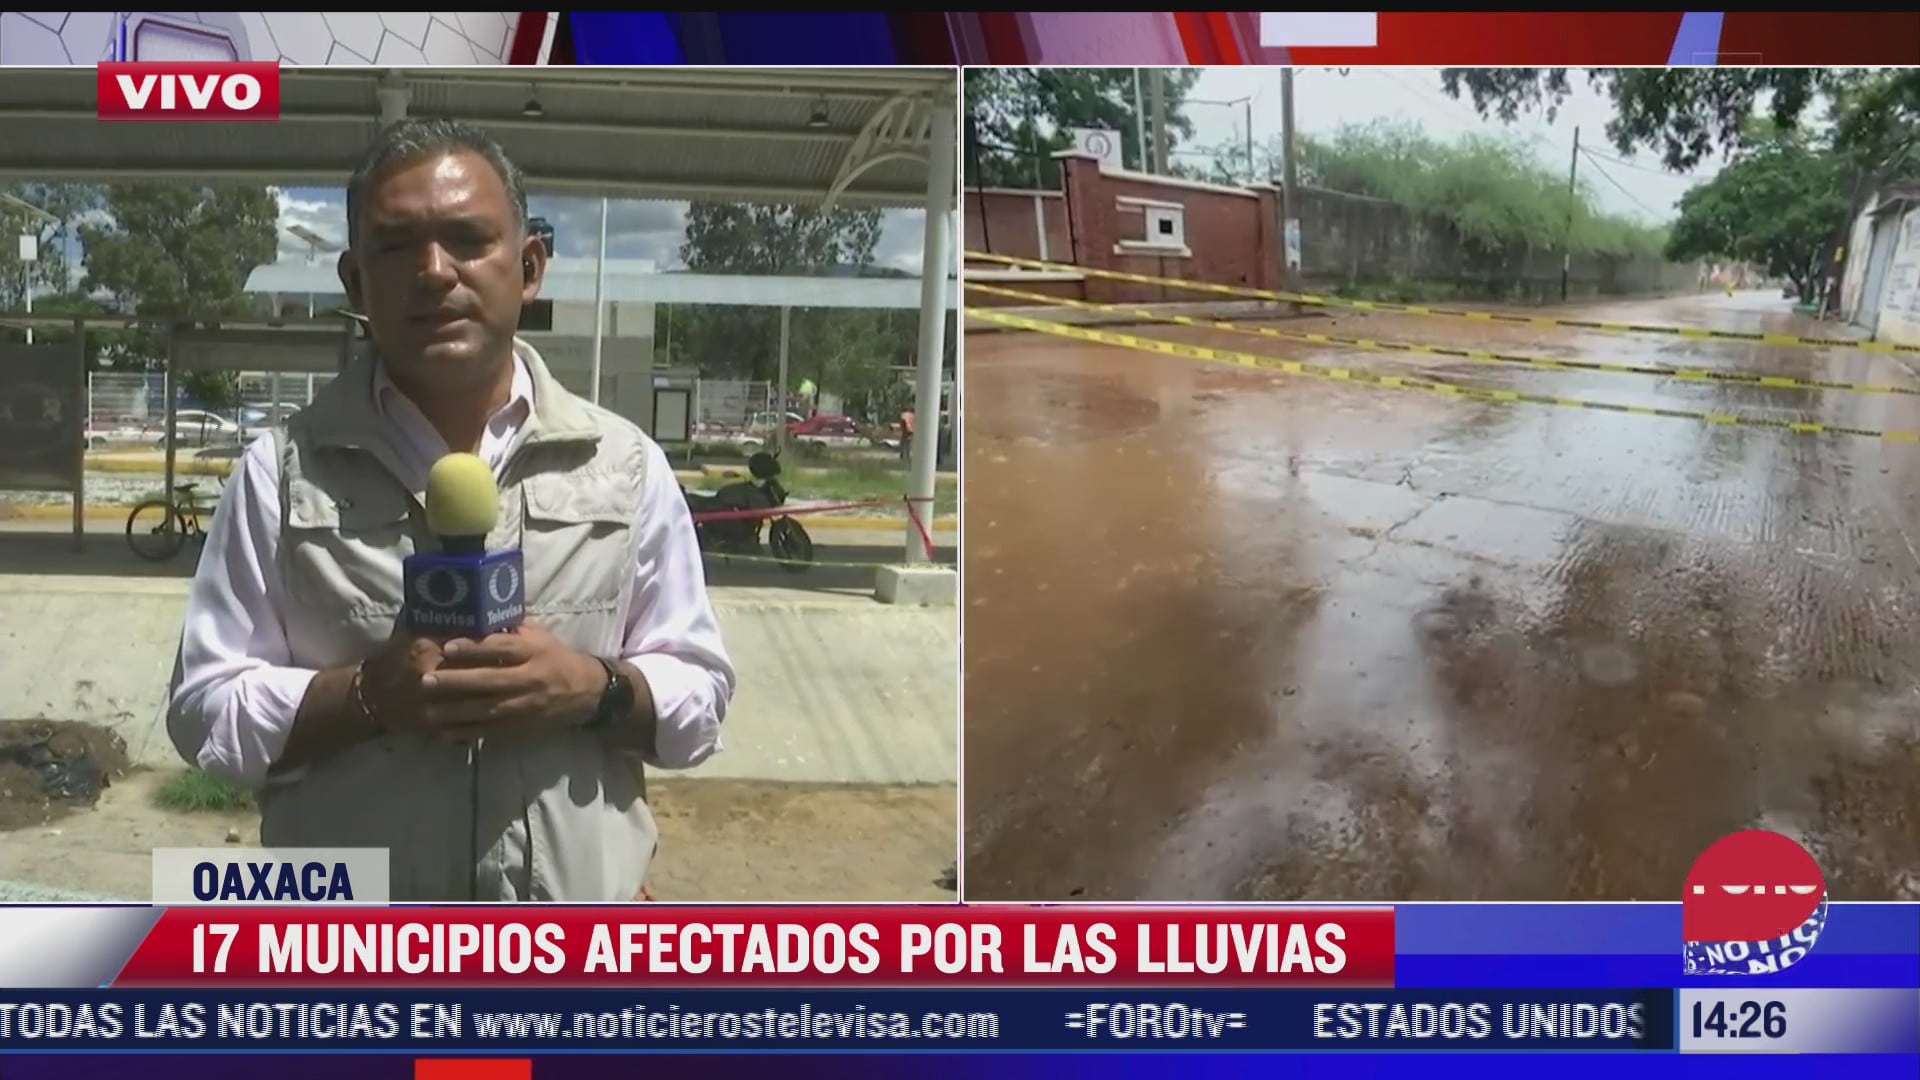 suman 17 municipios afectados por las lluvias en oaxaca